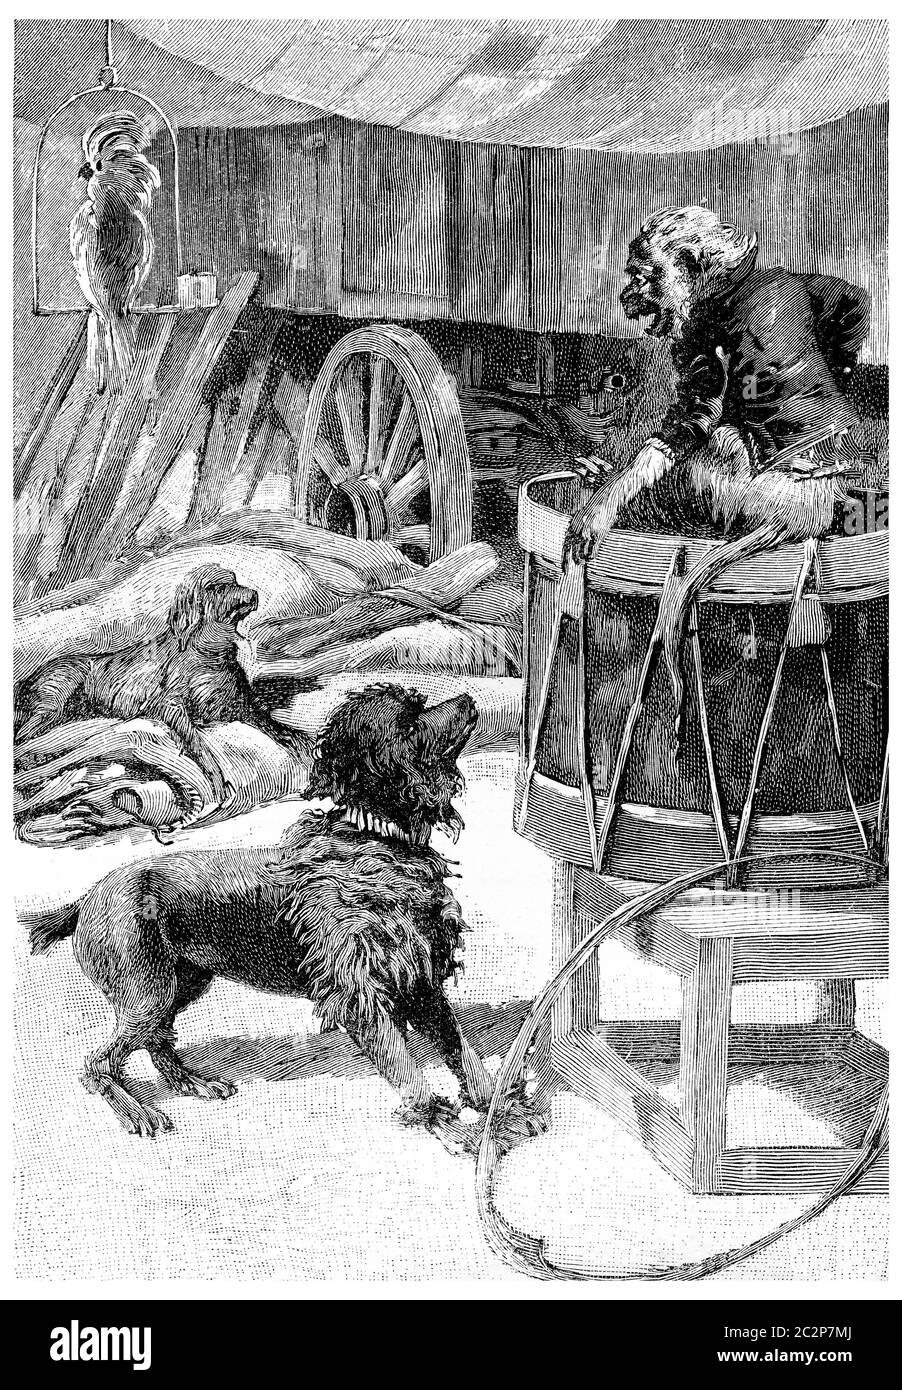 Wagram, Marengo, John Bull et Jako, illustration gravée d'époque. Jules Verne Cesar Cascabel, 1890. Banque D'Images